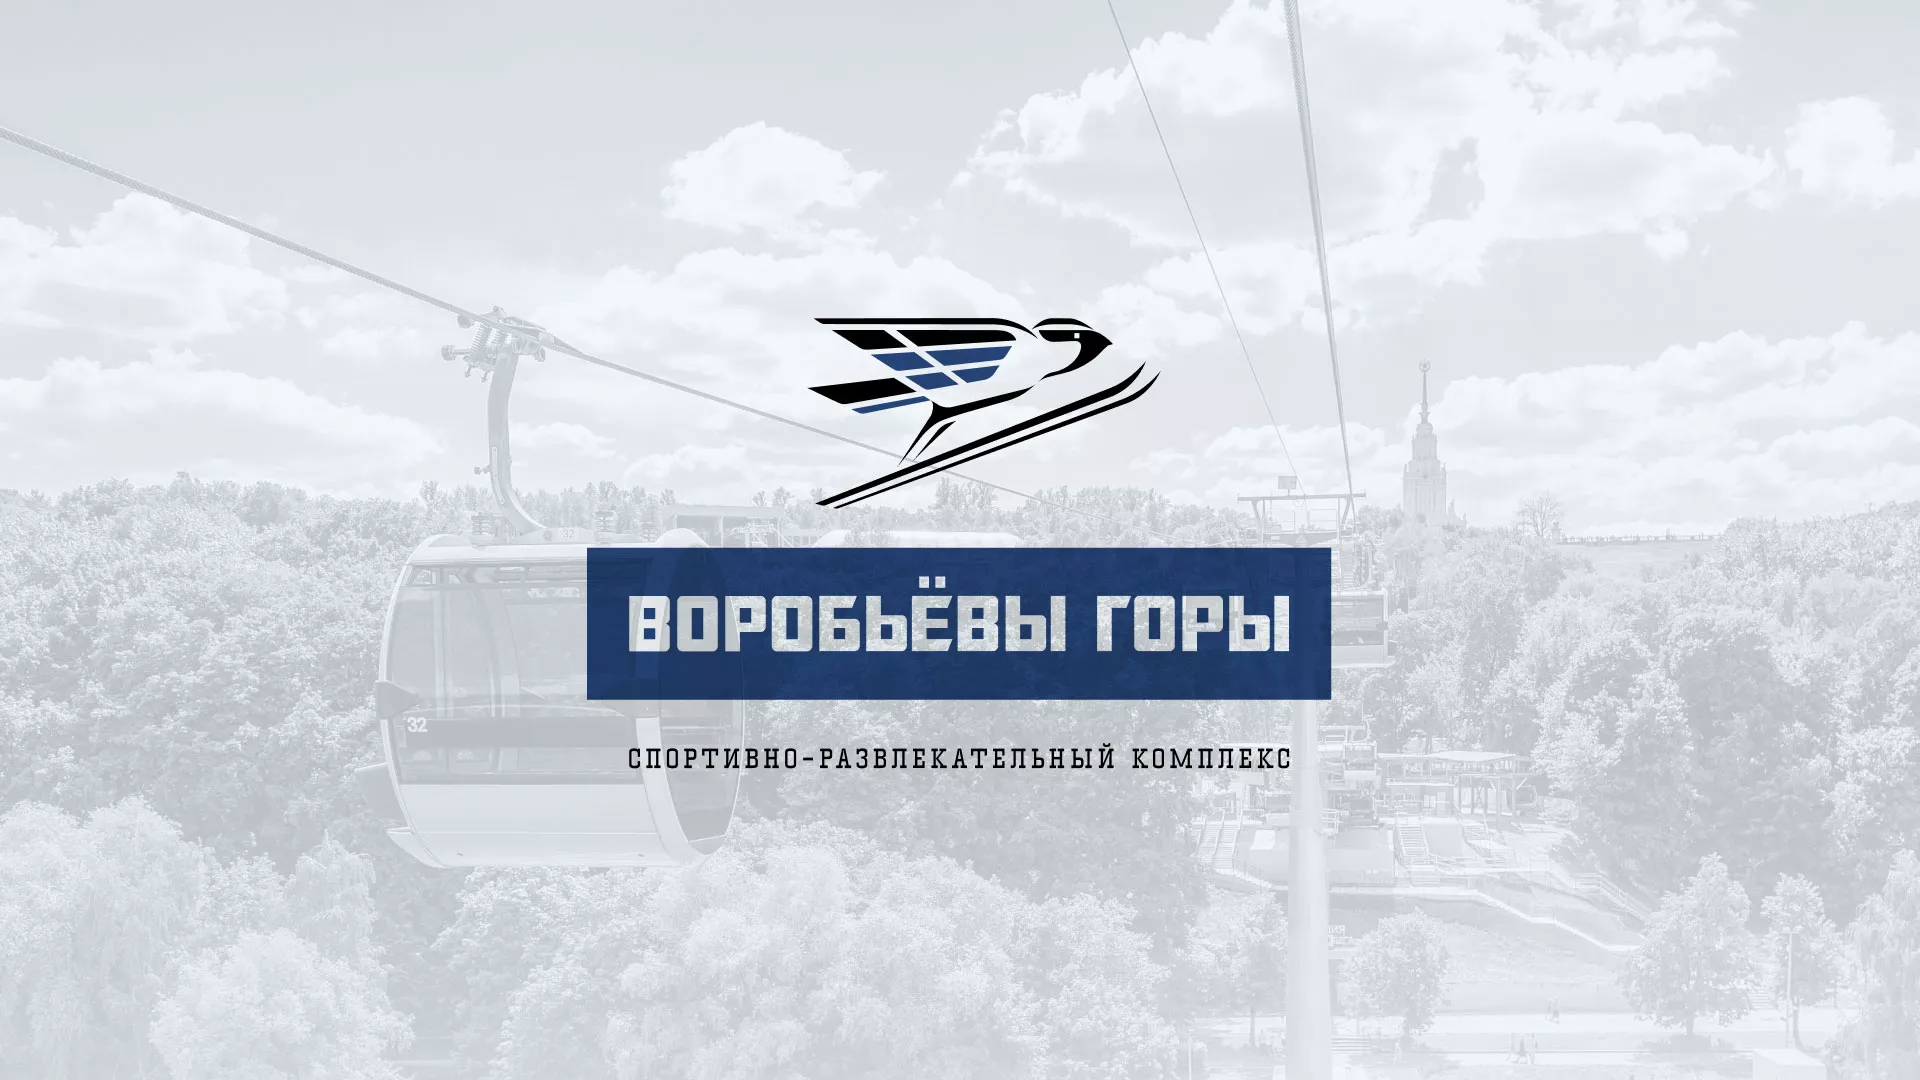 Разработка сайта в Райчихинске для спортивно-развлекательного комплекса «Воробьёвы горы»